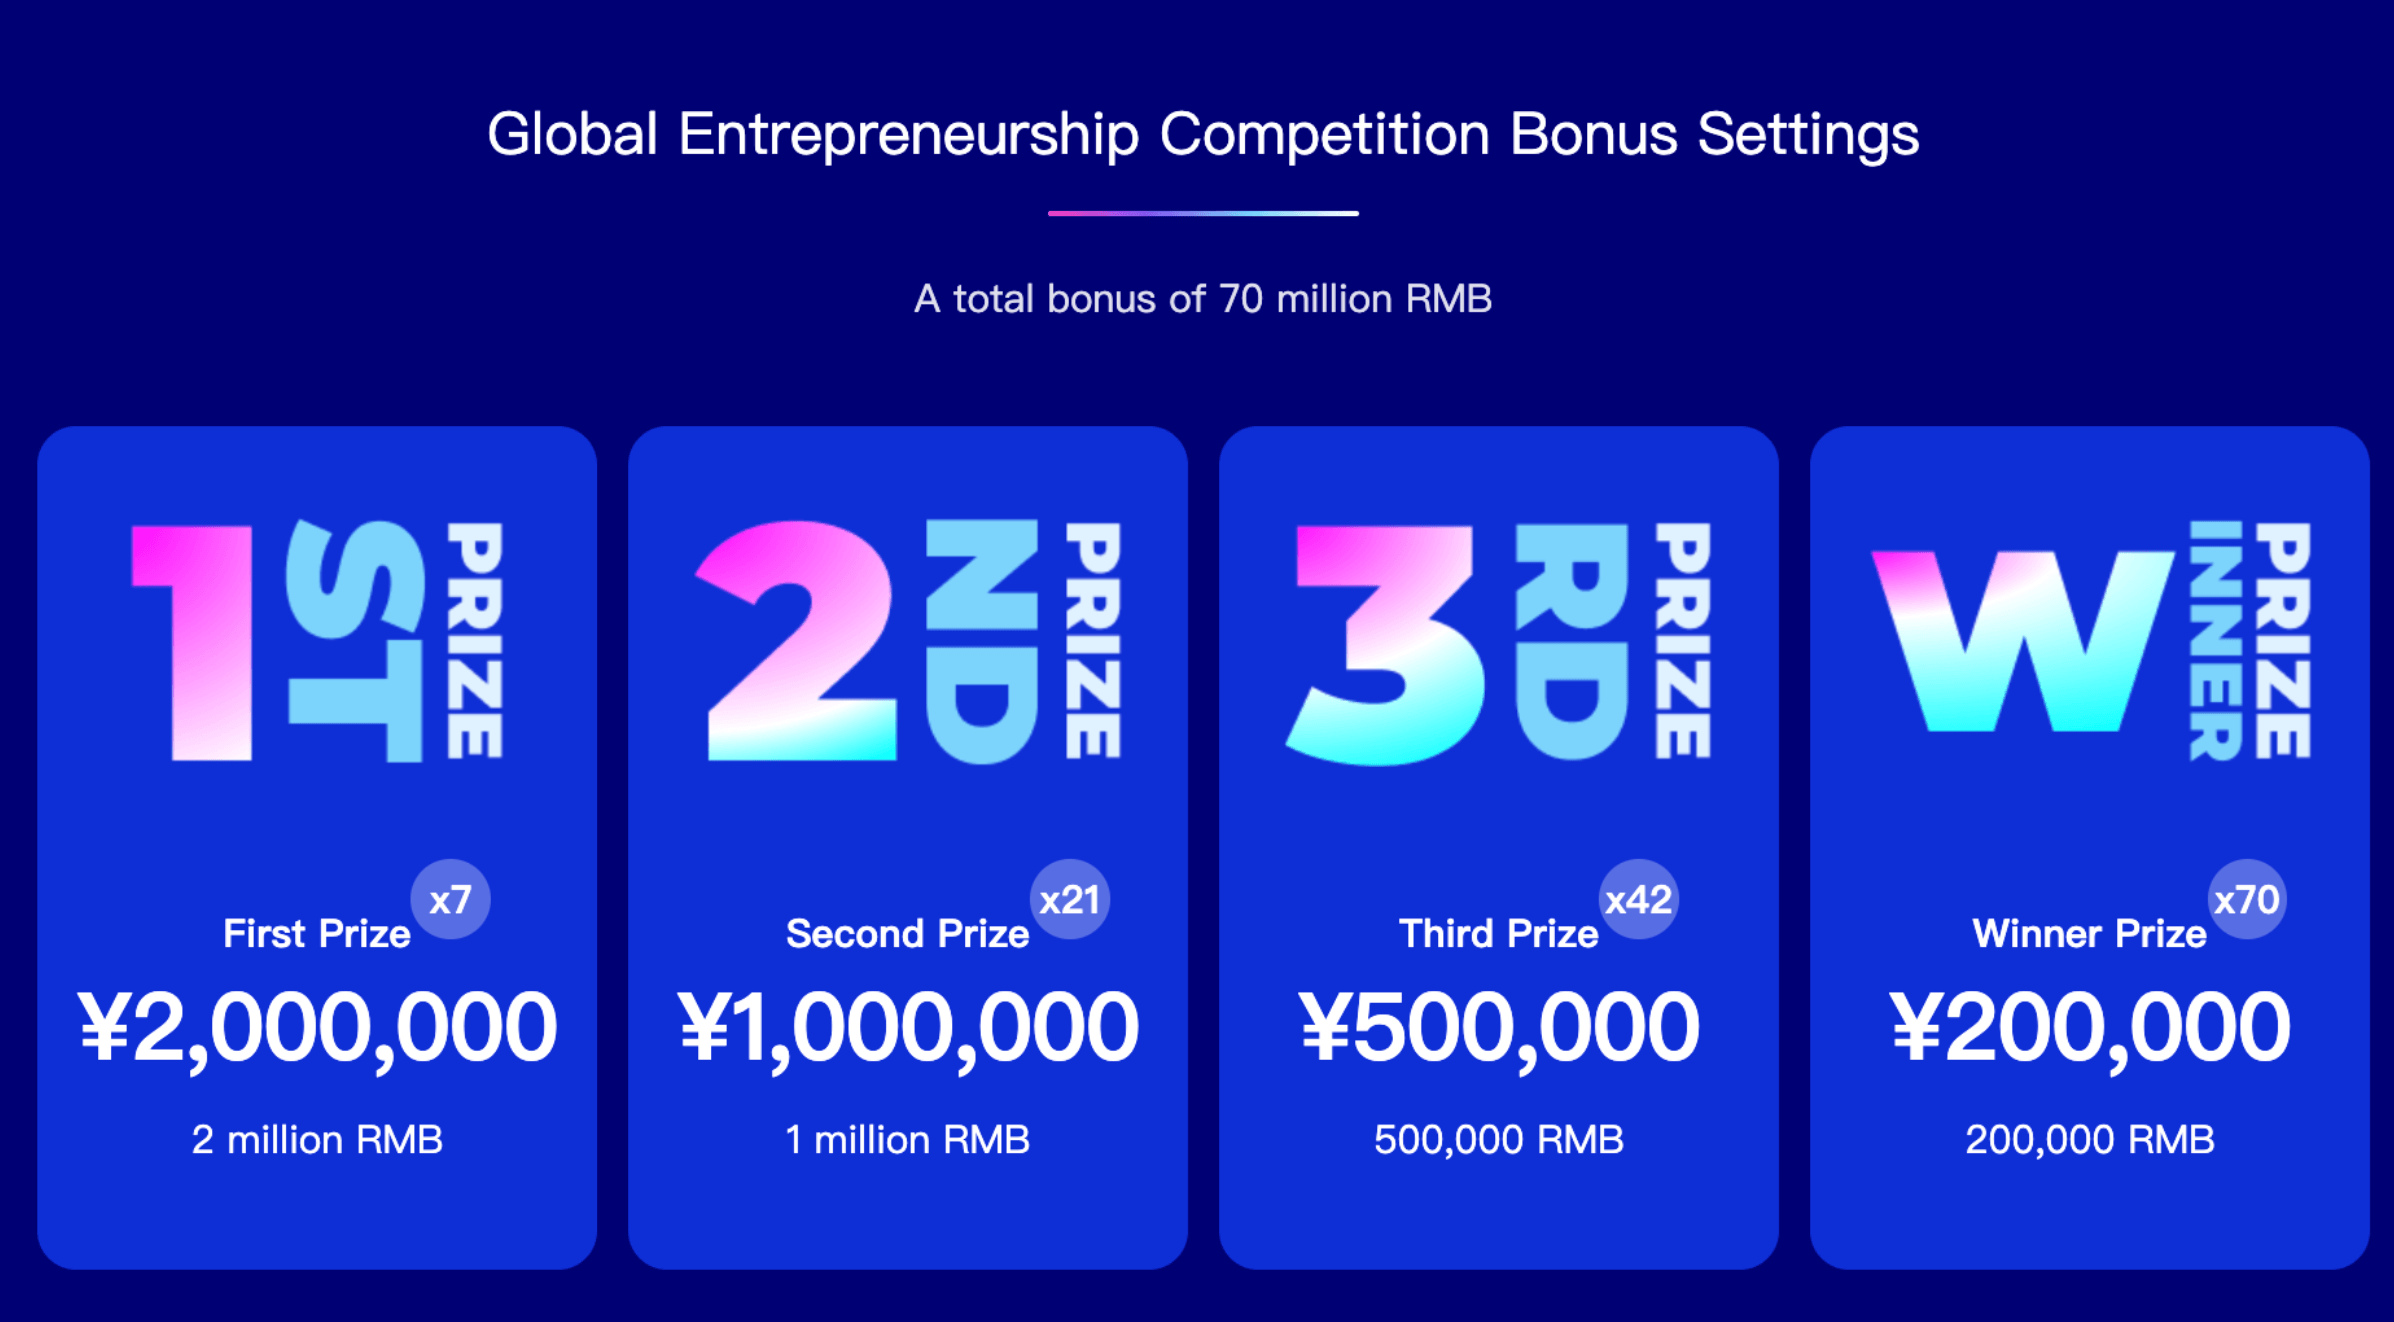 $10 million USD in Funding for Startups in Beijing